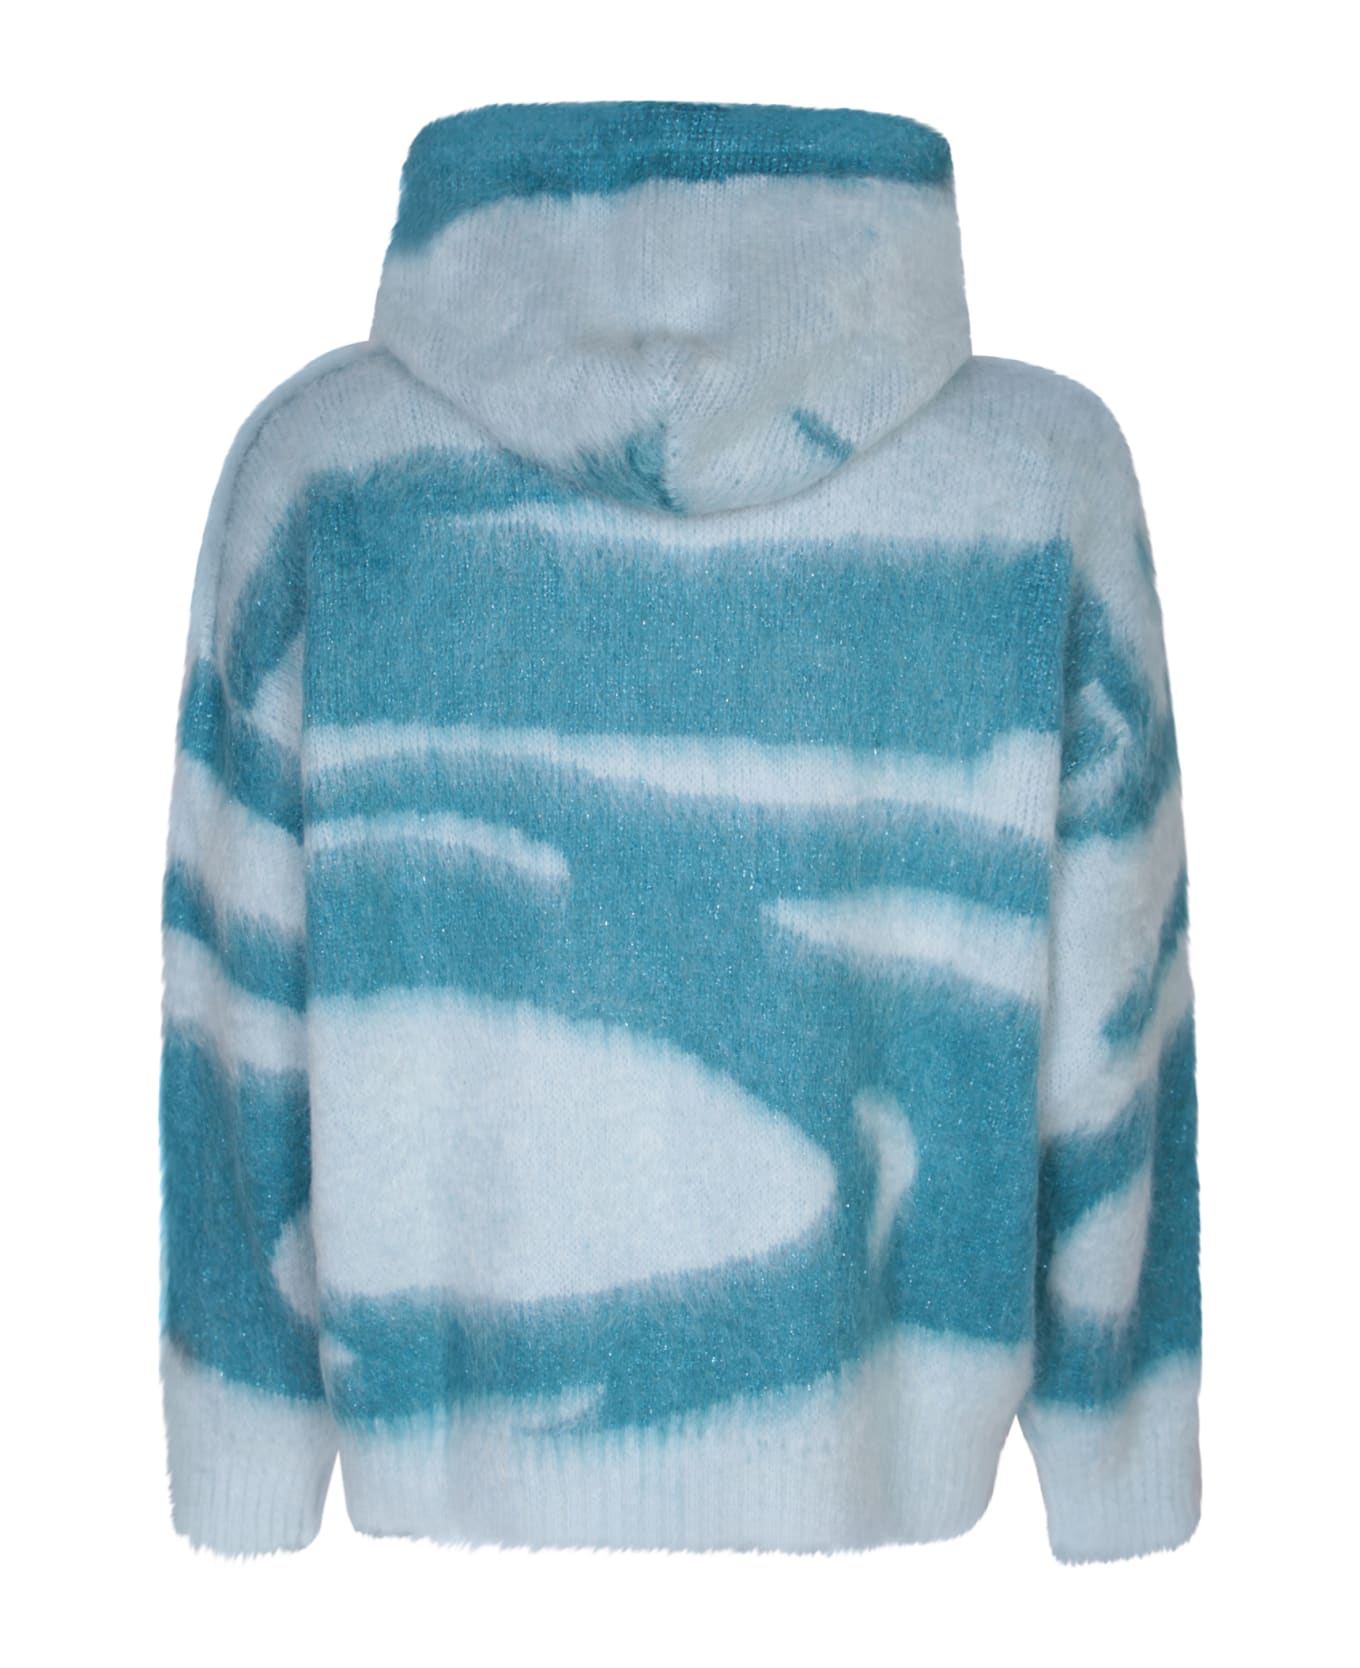 Bonsai Waves Light Blue Sweater - Blue